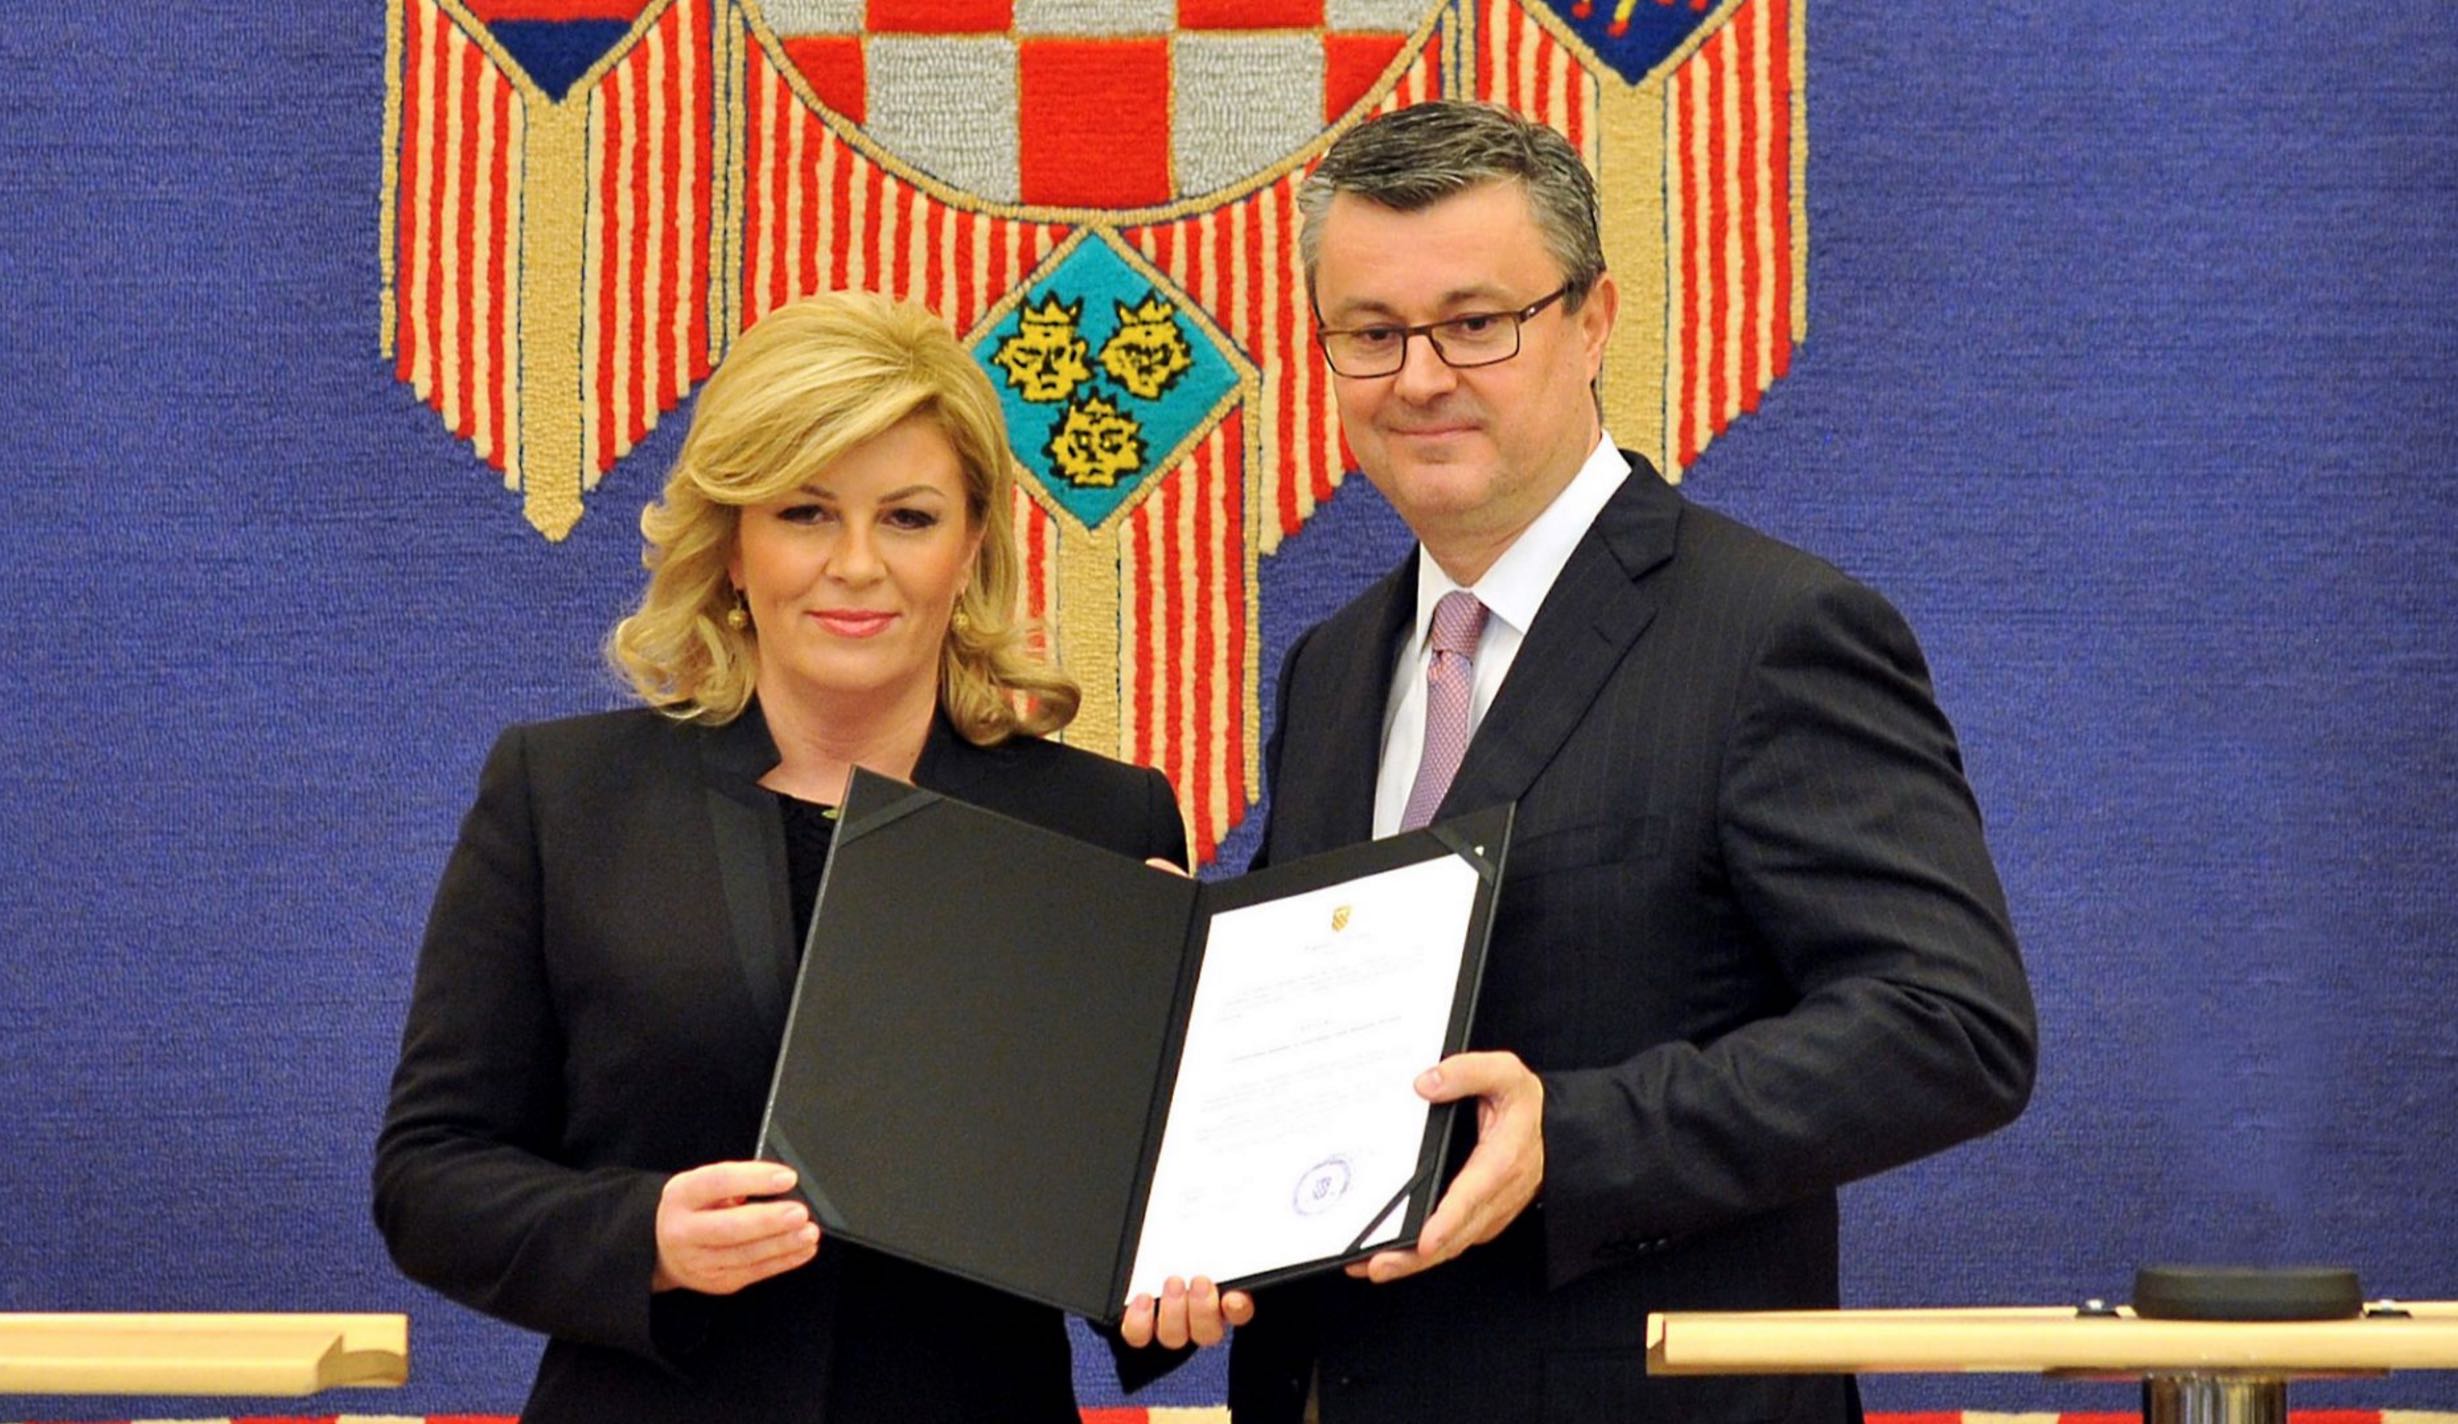 tihomir-oreskovic-premier-kroatien